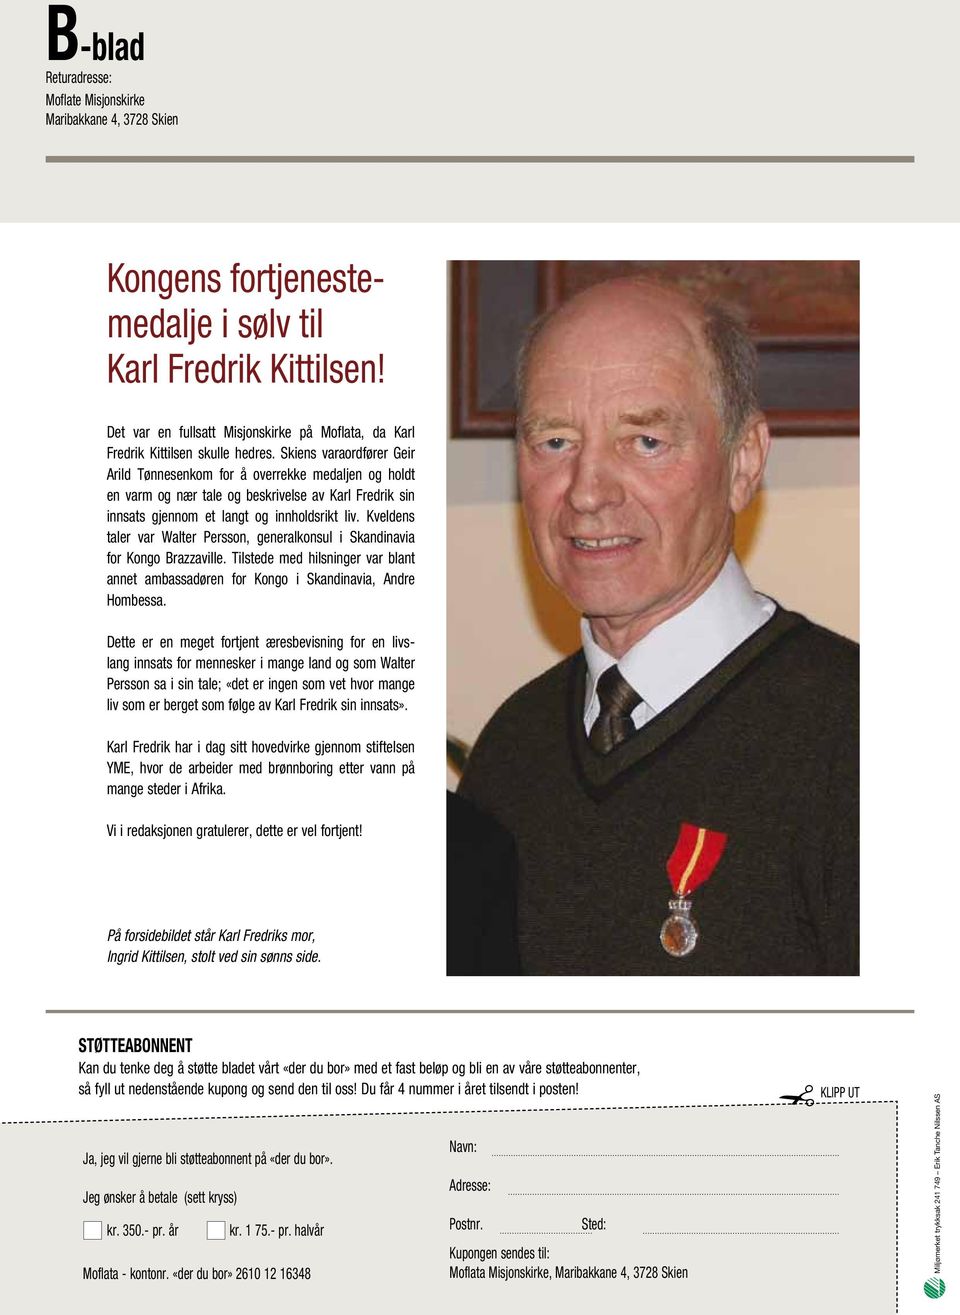 Skiens varaordfører Geir Arild Tønnesenkom for å overrekke medaljen og holdt en varm og nær tale og beskrivelse av Karl Fredrik sin innsats gjennom et langt og innholdsrikt liv.